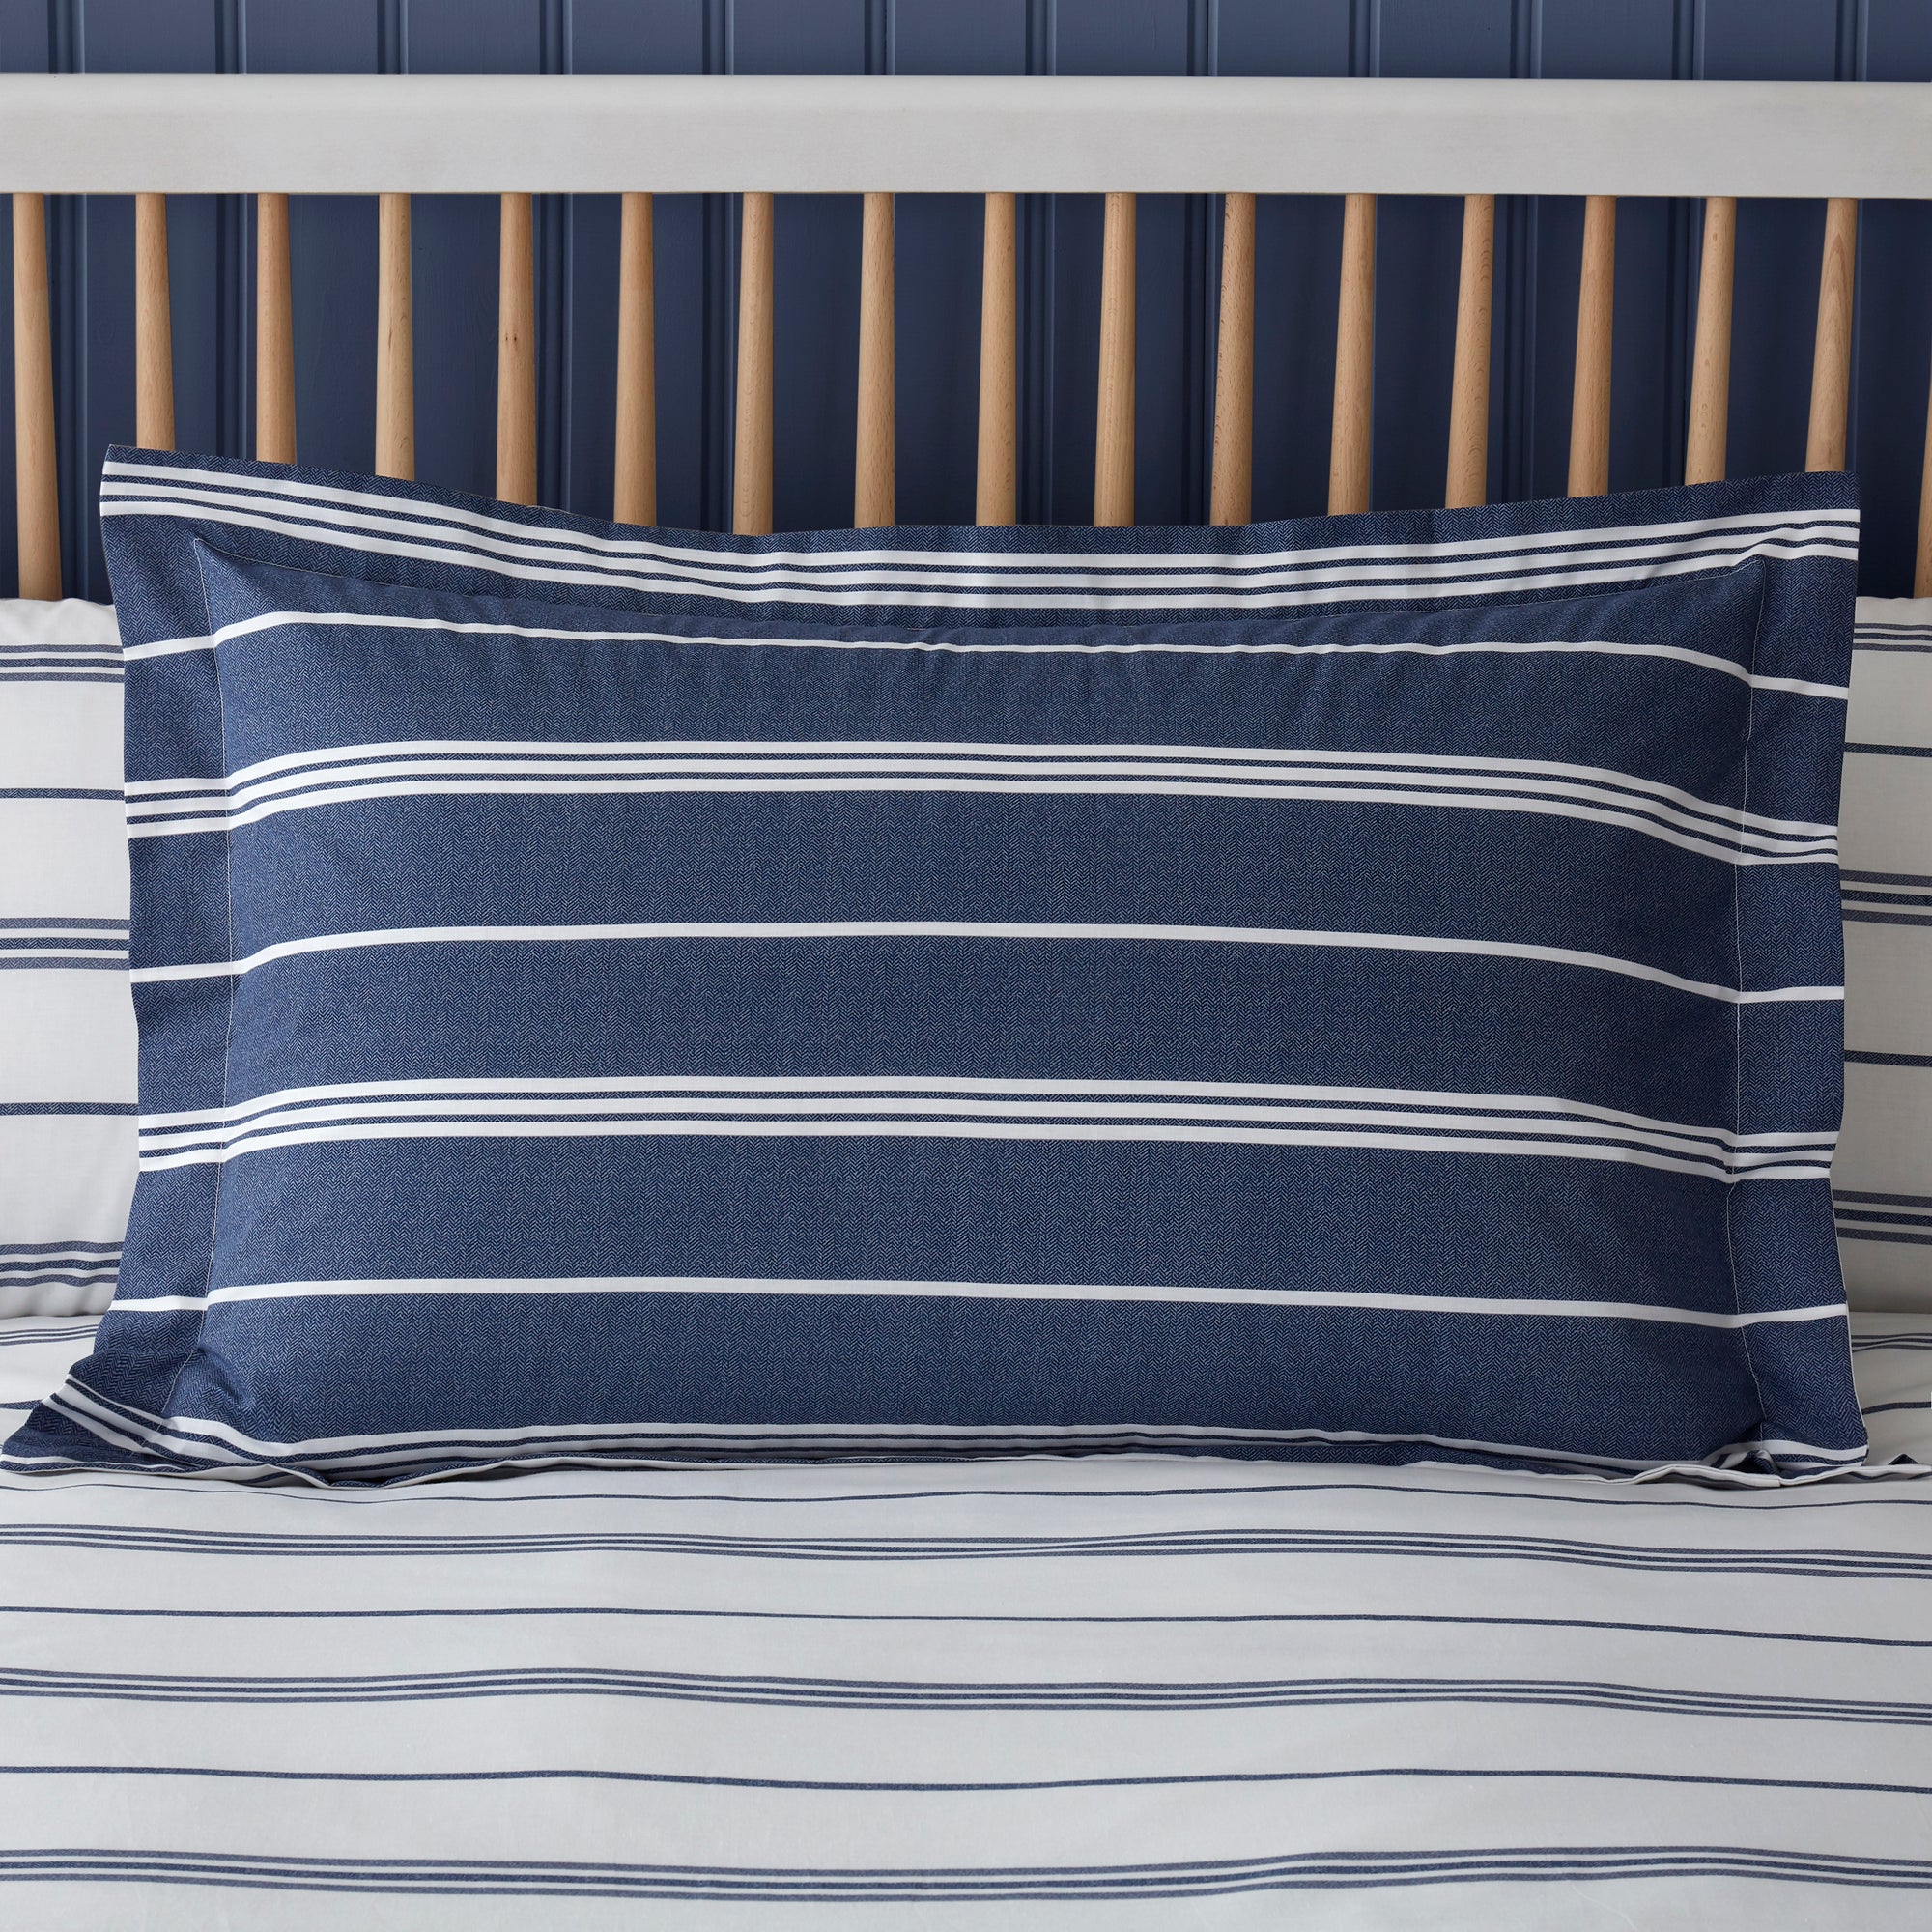 Falmouth Navy Striped 100 Cotton Oxford Pillowcase Navy Bluewhite